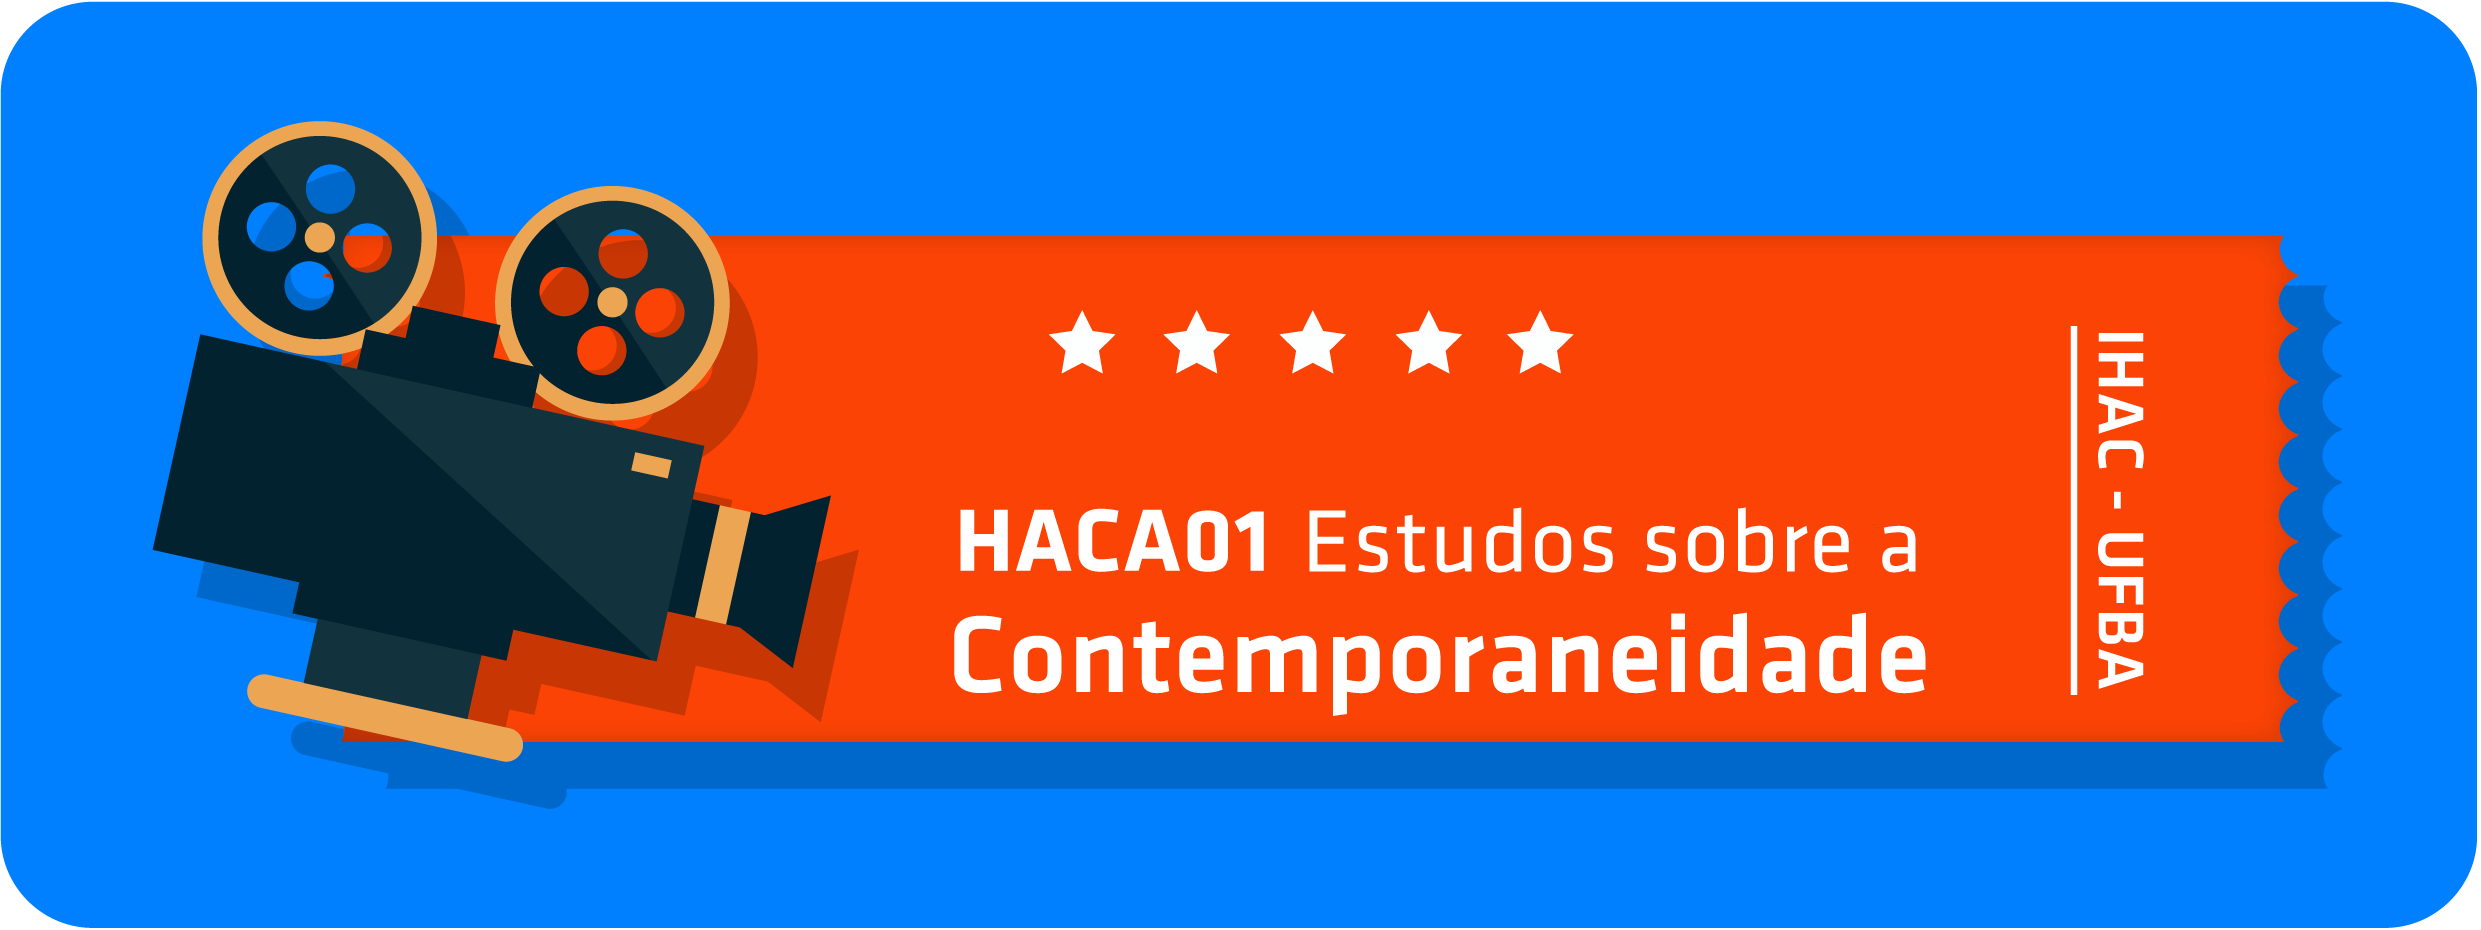 HACA01-2019.1